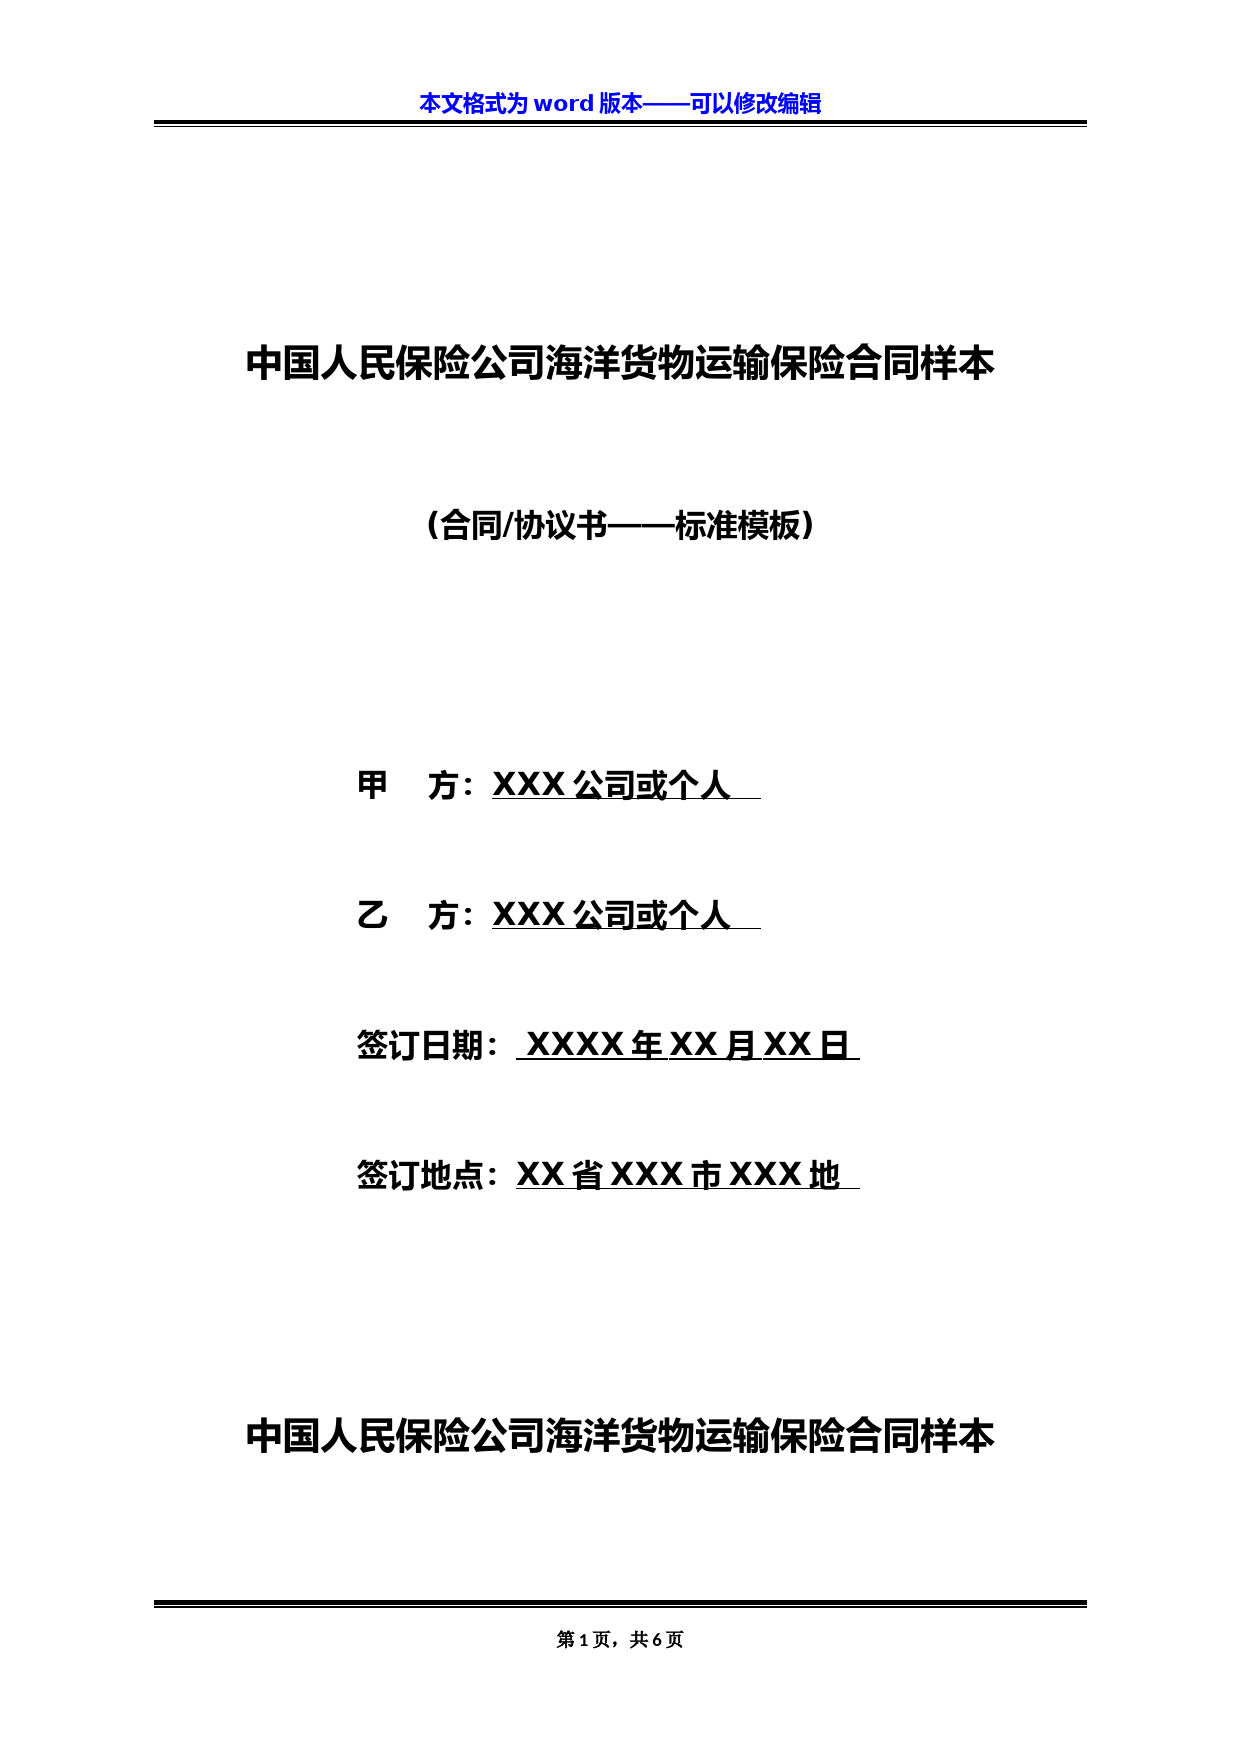 中国人民保险公司海洋货物运输保险合同样本(标准版)